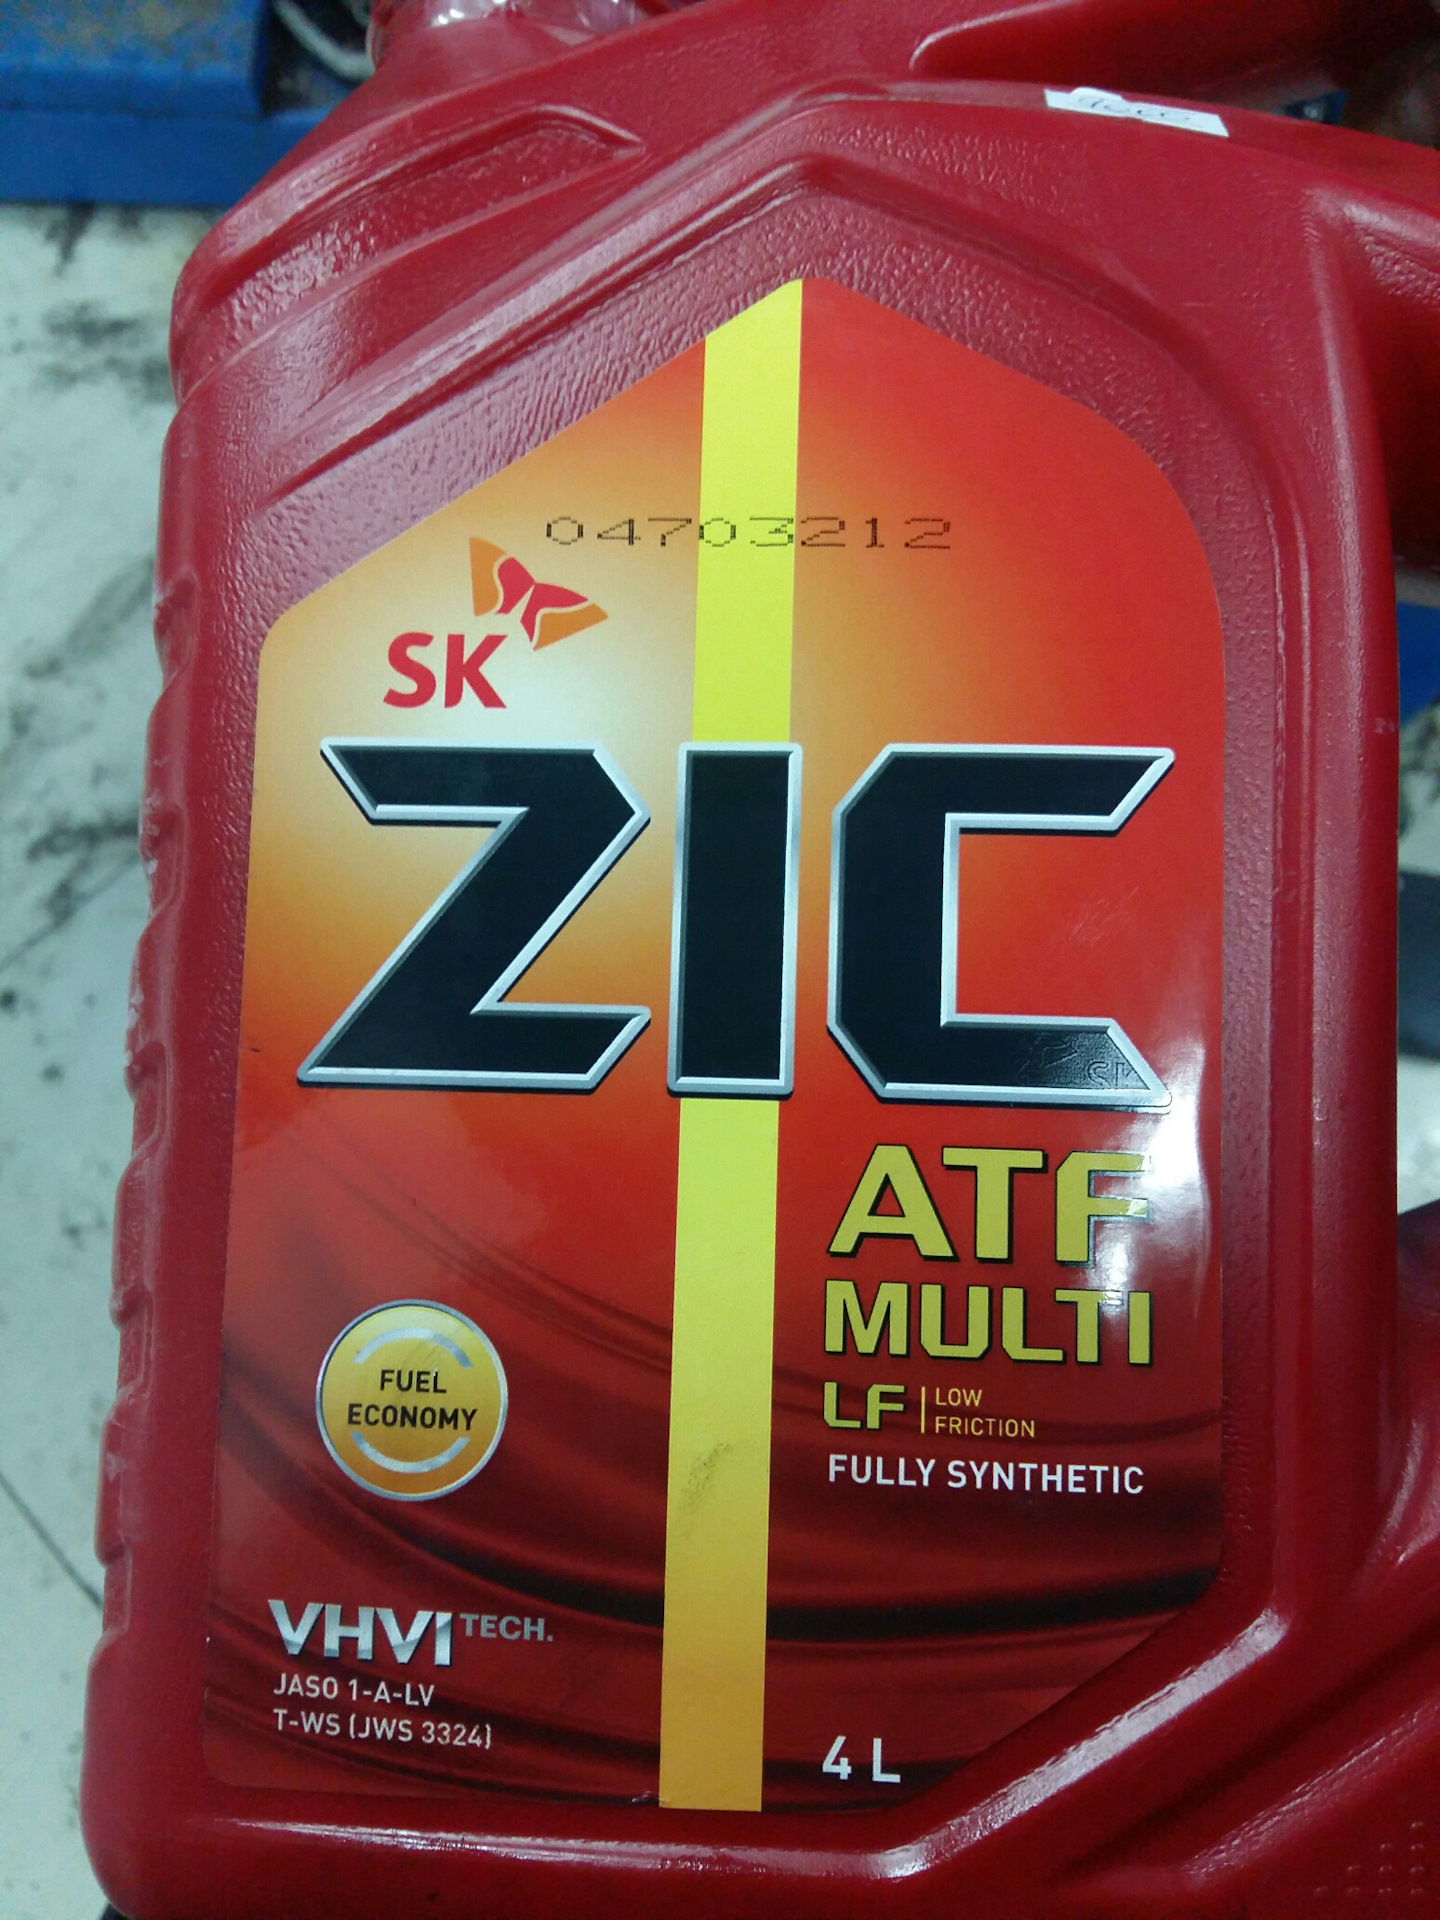 Масло zic atf 4л. Масло трансмиссионное ZIC ATF Multi LF синтетическое 4. ZIC масло трансмиссионное ZIC ATF Multi 4л. Масло трансмиссионное ZIC ATF Multi LF, 4 Л. ZIC 162665 масло трансмиссионное.